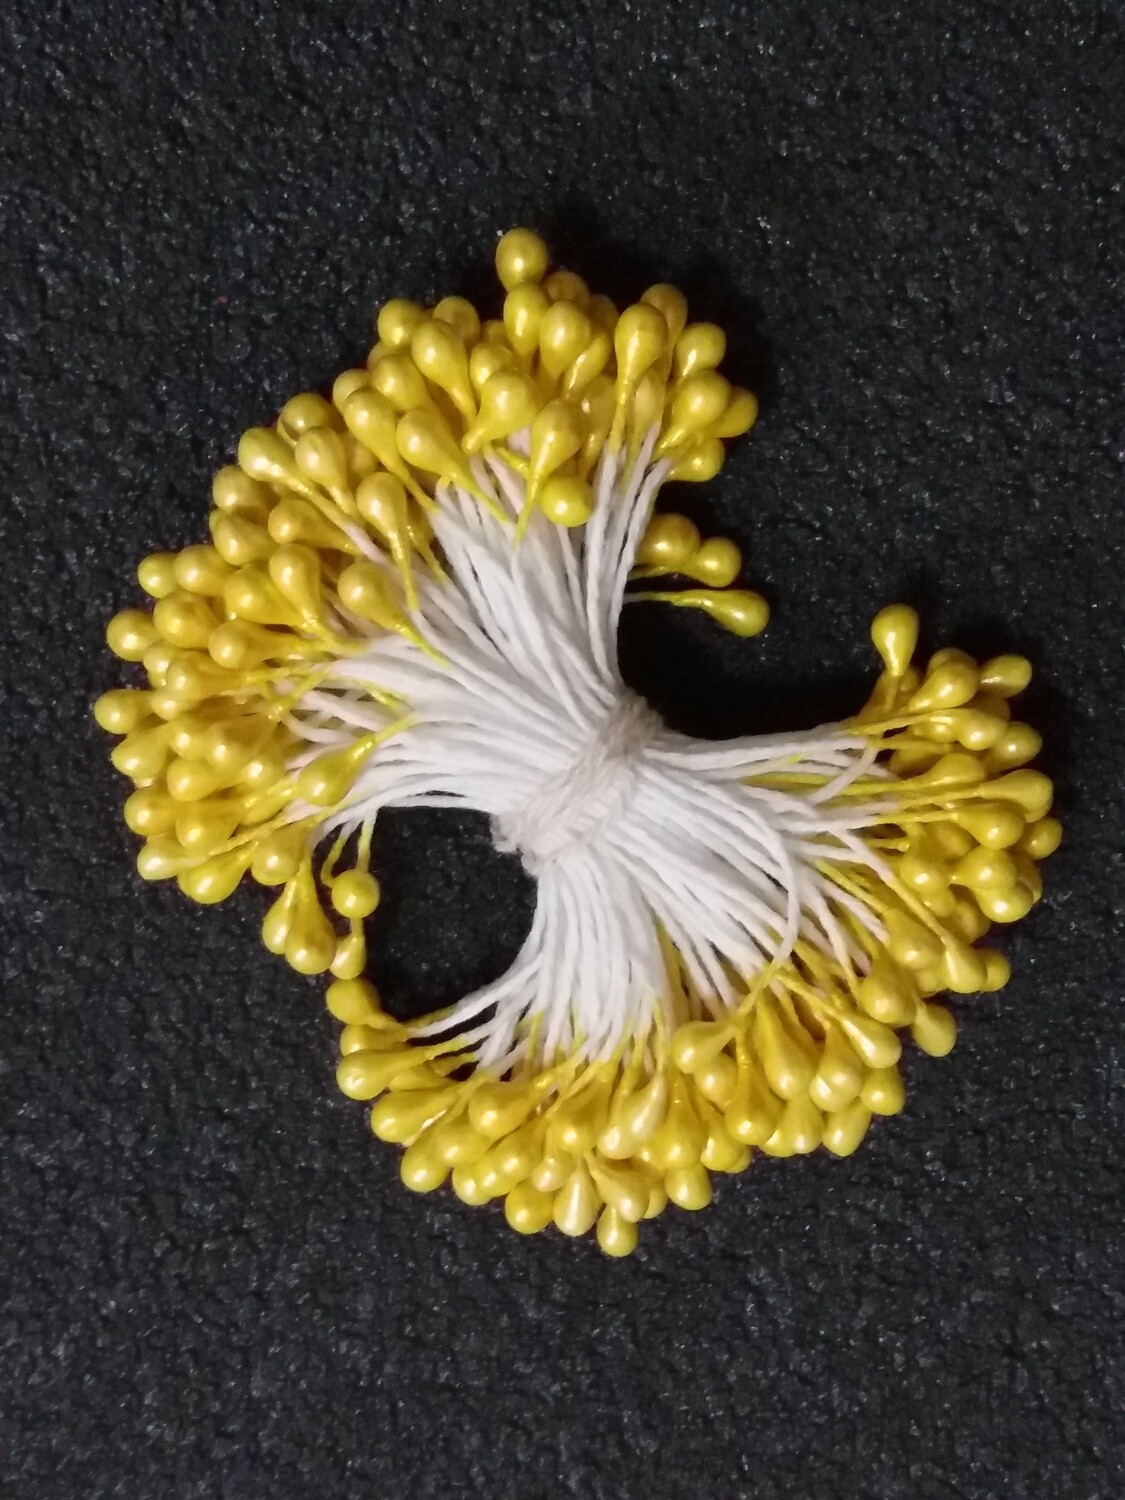 Тычинки для искусственных цветов "Капельки желтые" (набор 170 шт) длина 6 см Пластик, текстиль